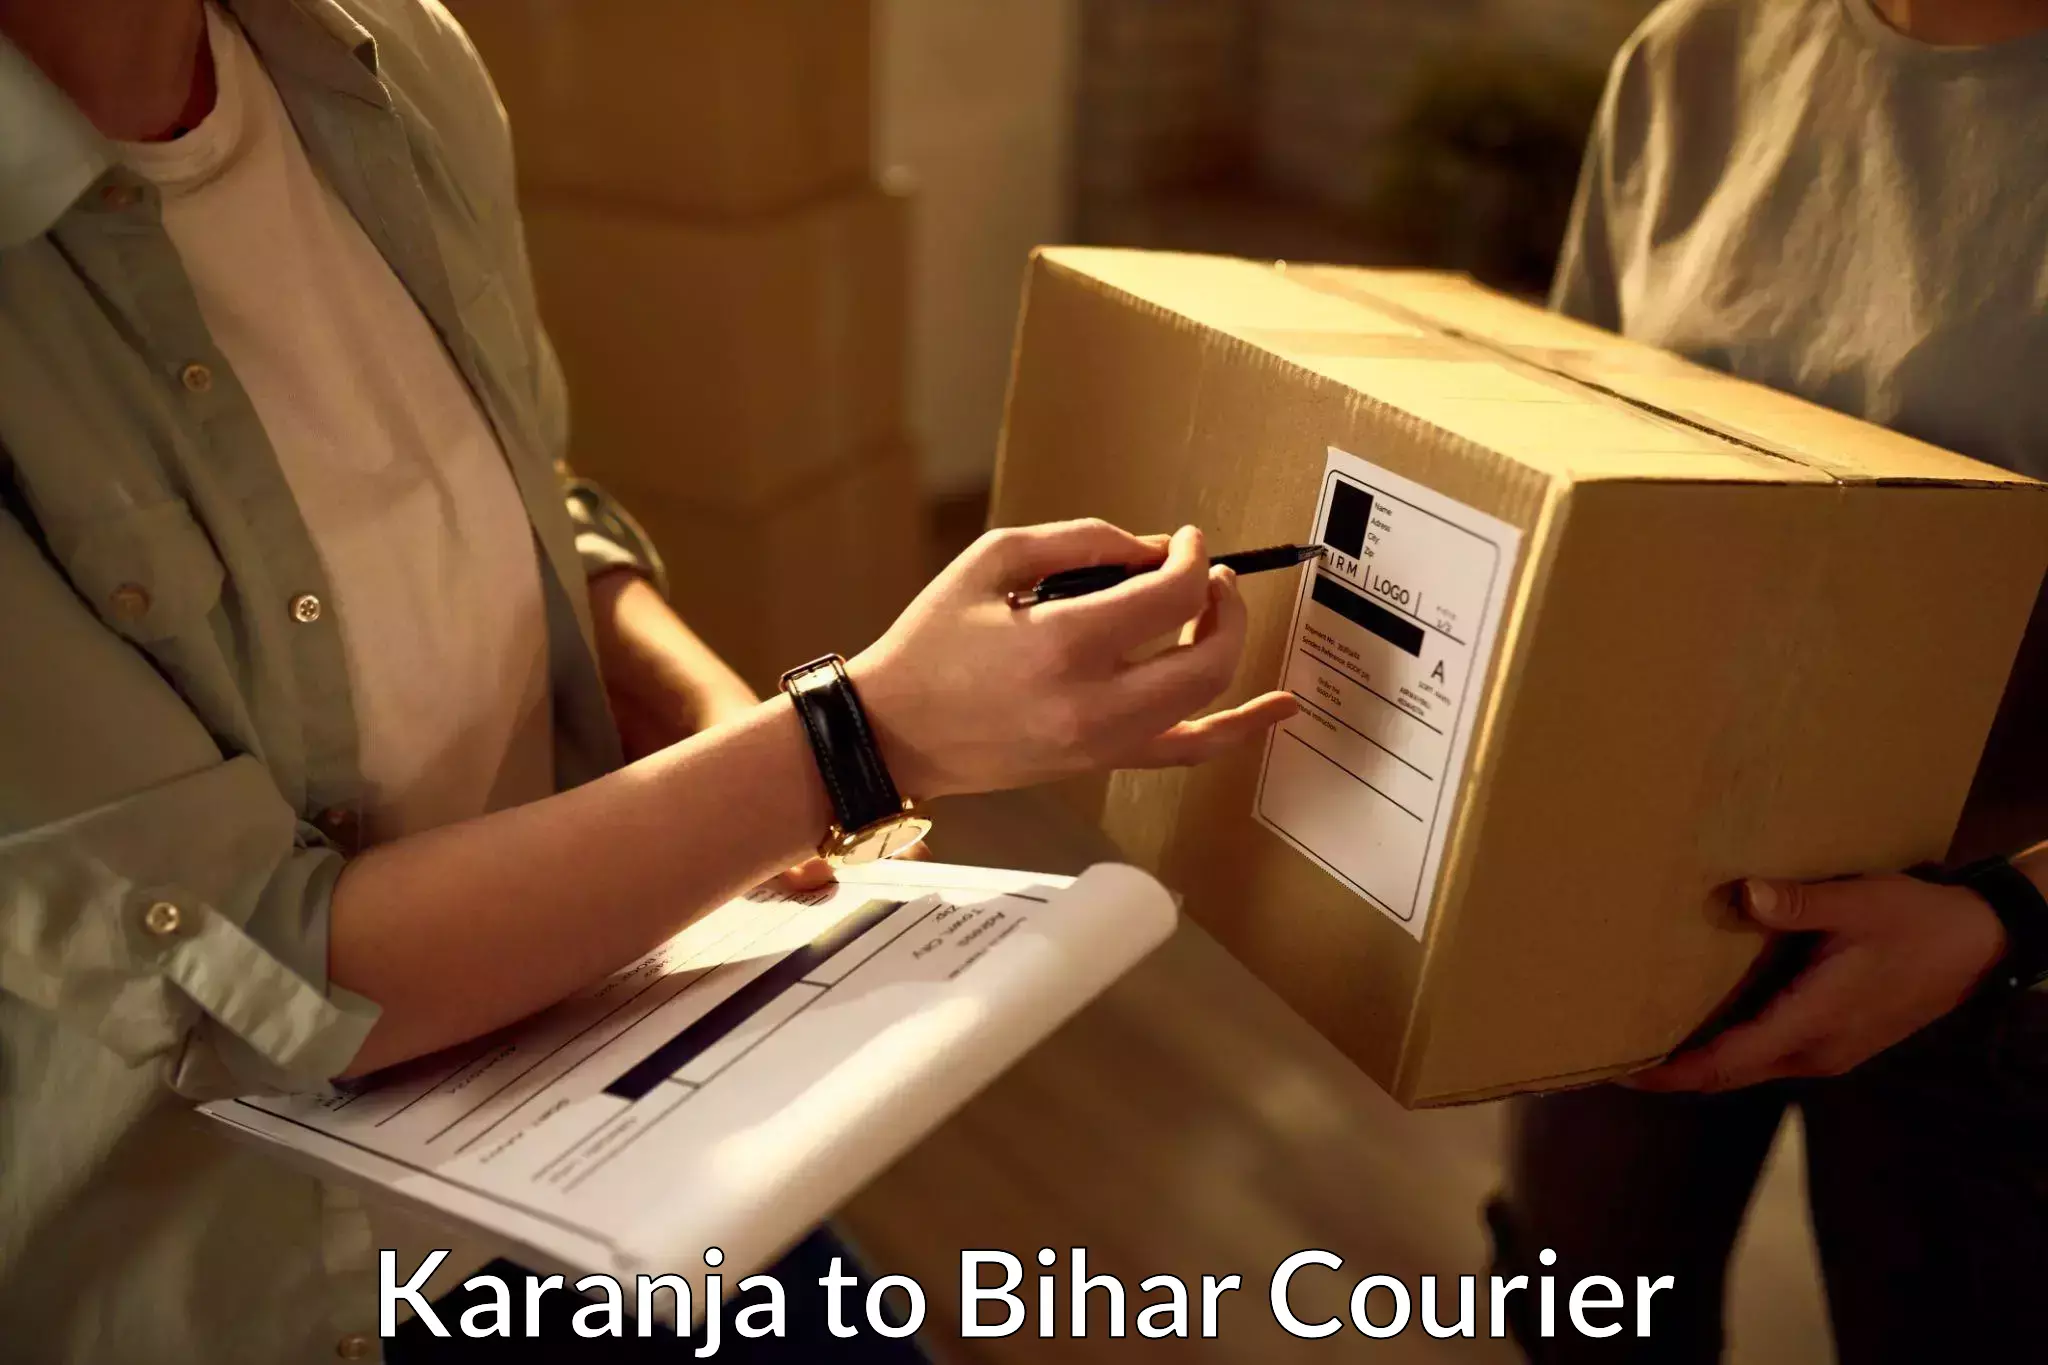 24/7 courier service Karanja to Munger